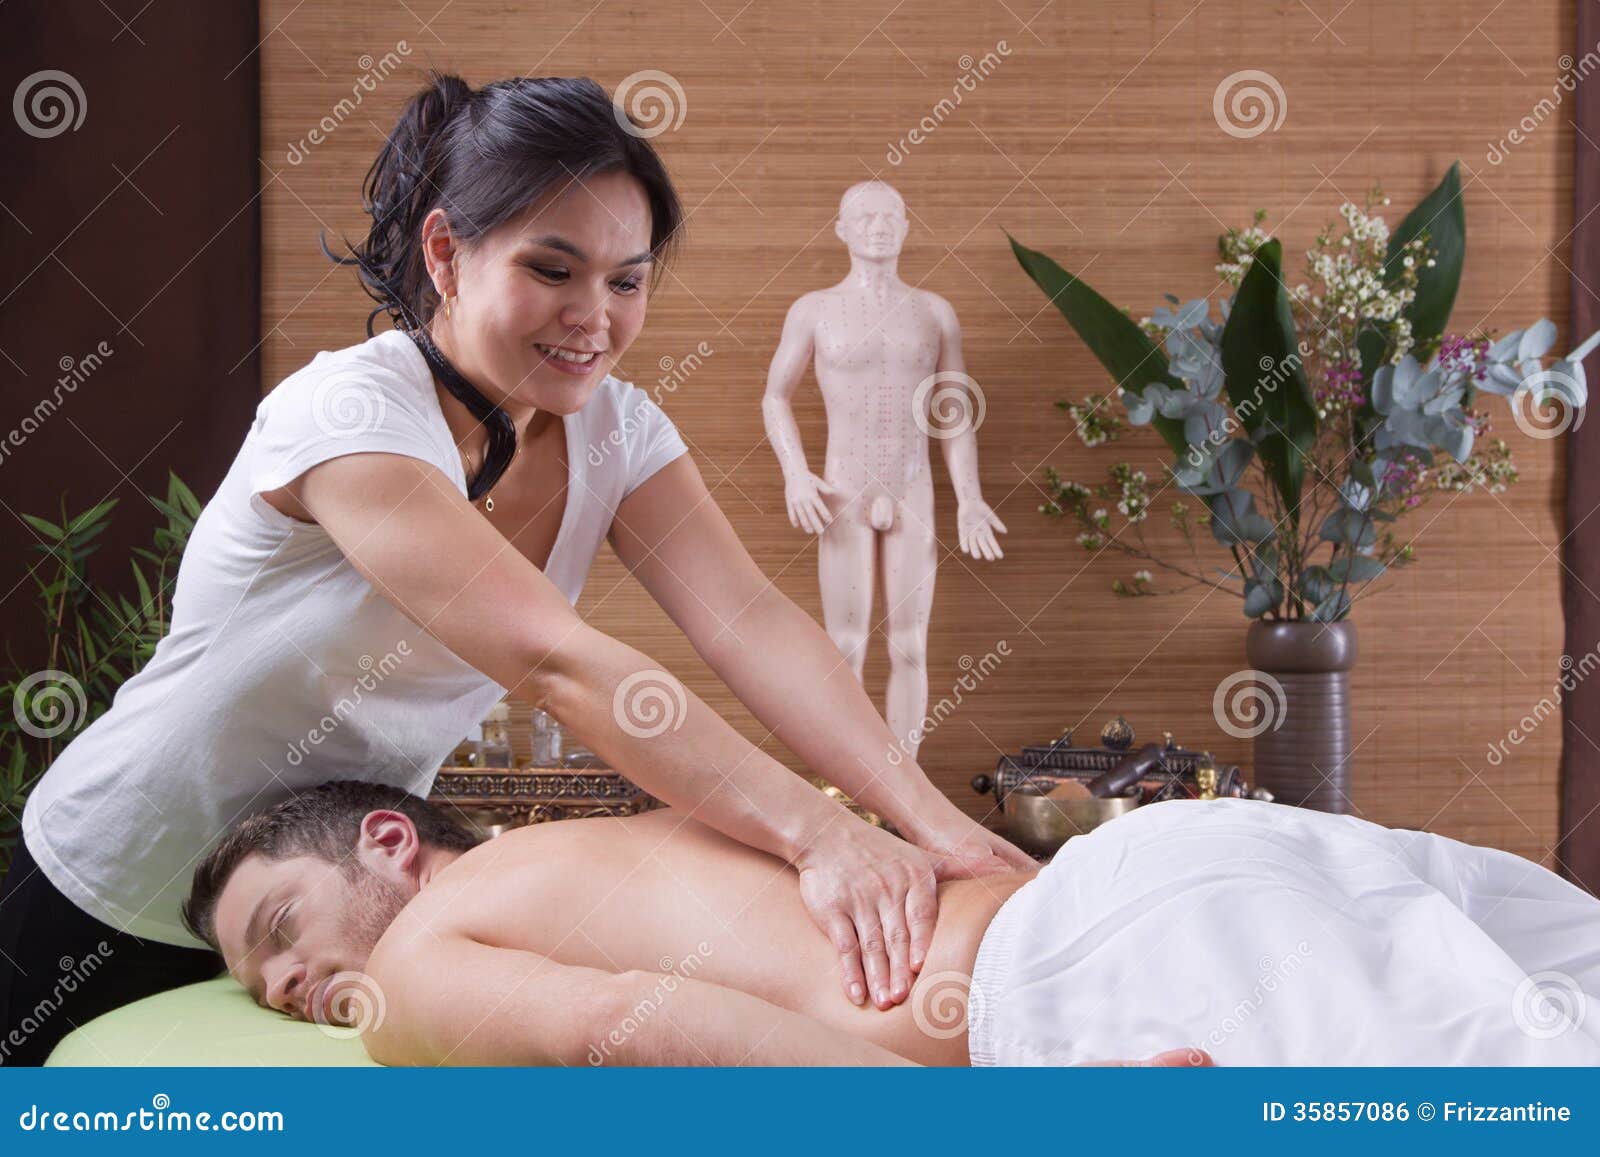 транс делает тайский массаж мужчине фото 62